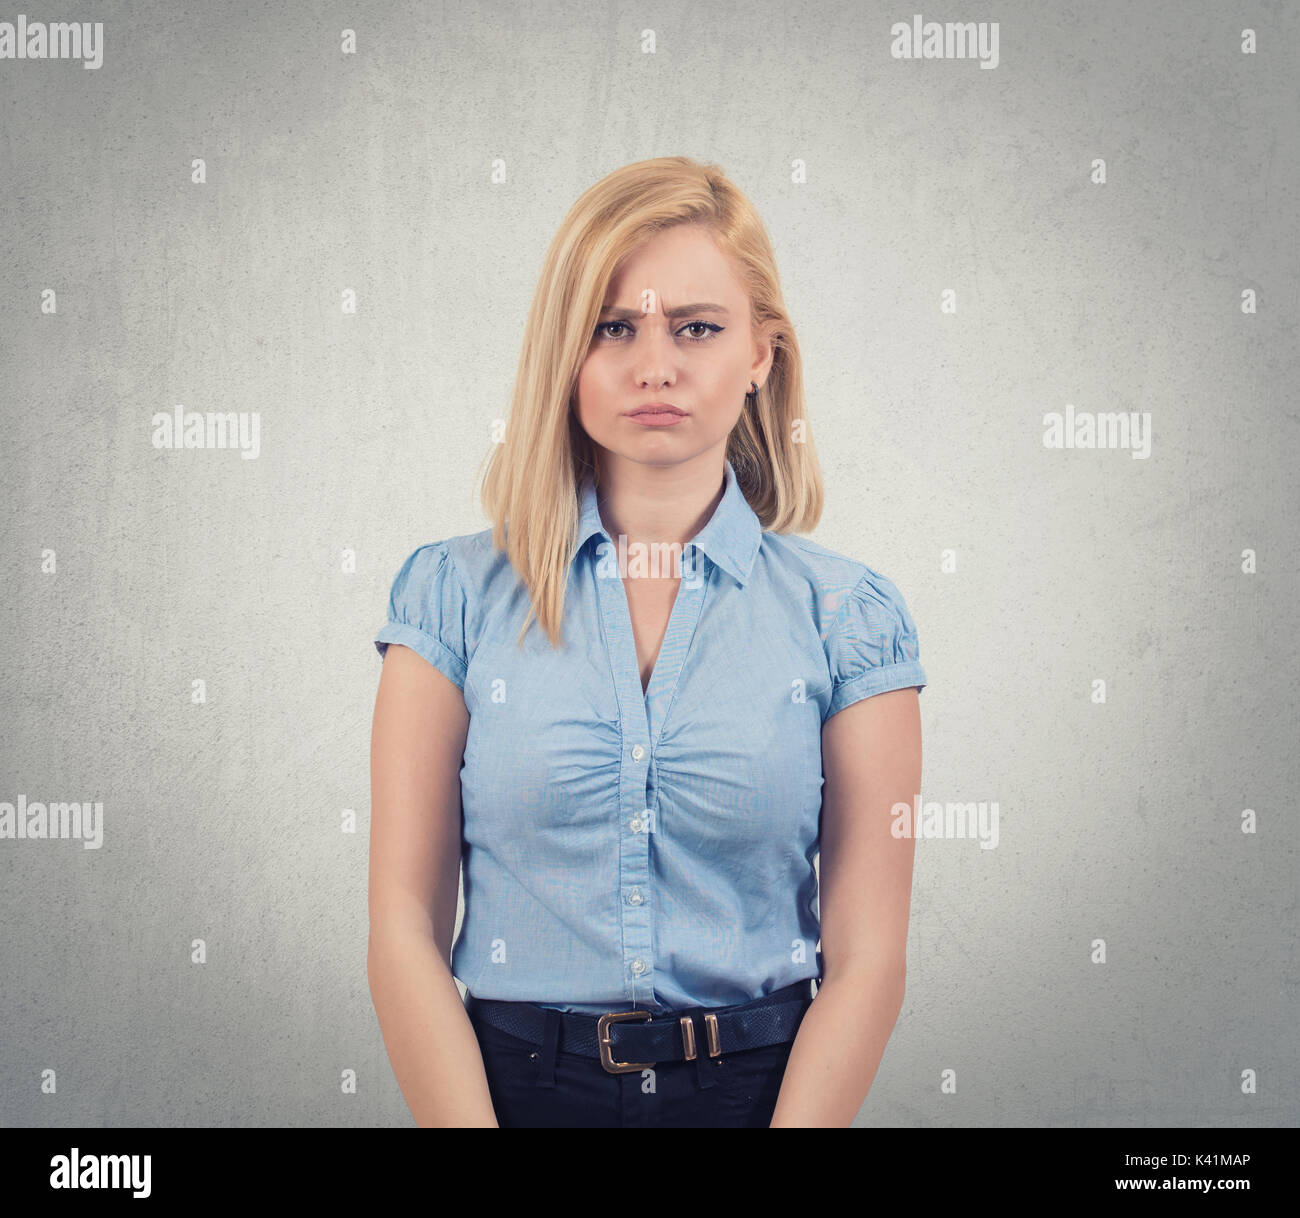 Closeup Portrait verärgert, beleidigt, unglückliche junge Frau, isolierten dunklen grauen Hintergrund. Negative menschliche Gefühle, Mimik, Gefühle, Verhalten, Reaktion Stockfoto